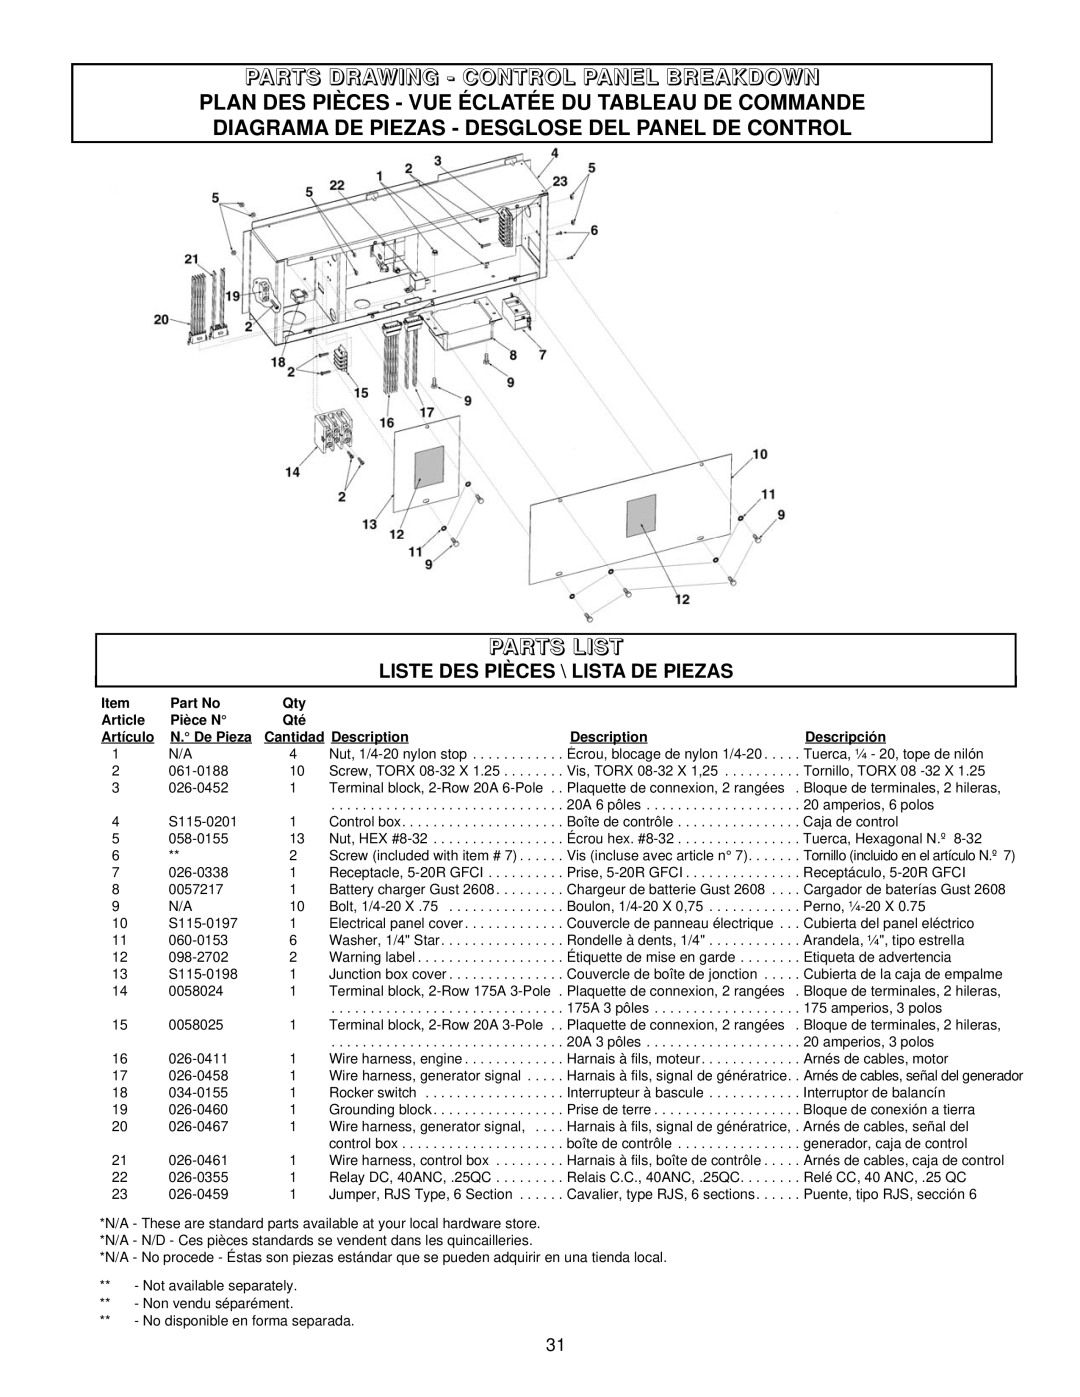 Coleman PM402511 Parts Drawing - Control Panel Breakdown, Plan Des Pièces - Vue Éclatée Du Tableau De Commande, Article 